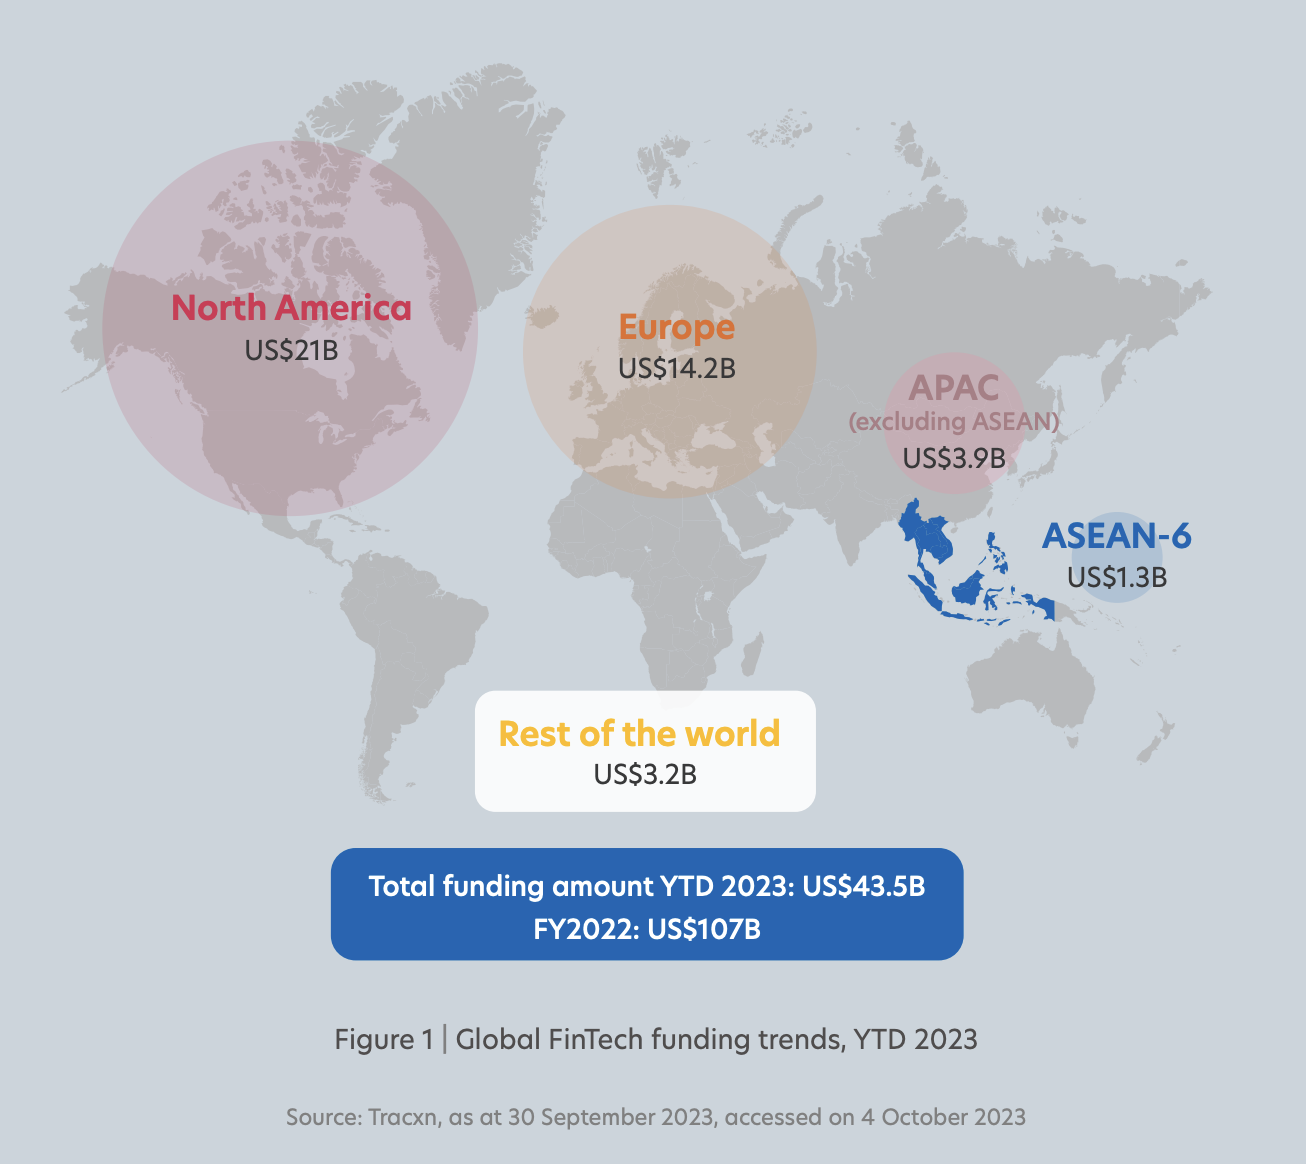 世界のフィンリーチ資金調達トレンド、2023 年初年度、出典: ASEAN 2023 におけるフィンテック: グリーン トランジションのシーディング、UOB、PwC シンガポールおよびシンガポール フィンテック協会 (SFA)、2023 年 XNUMX 月